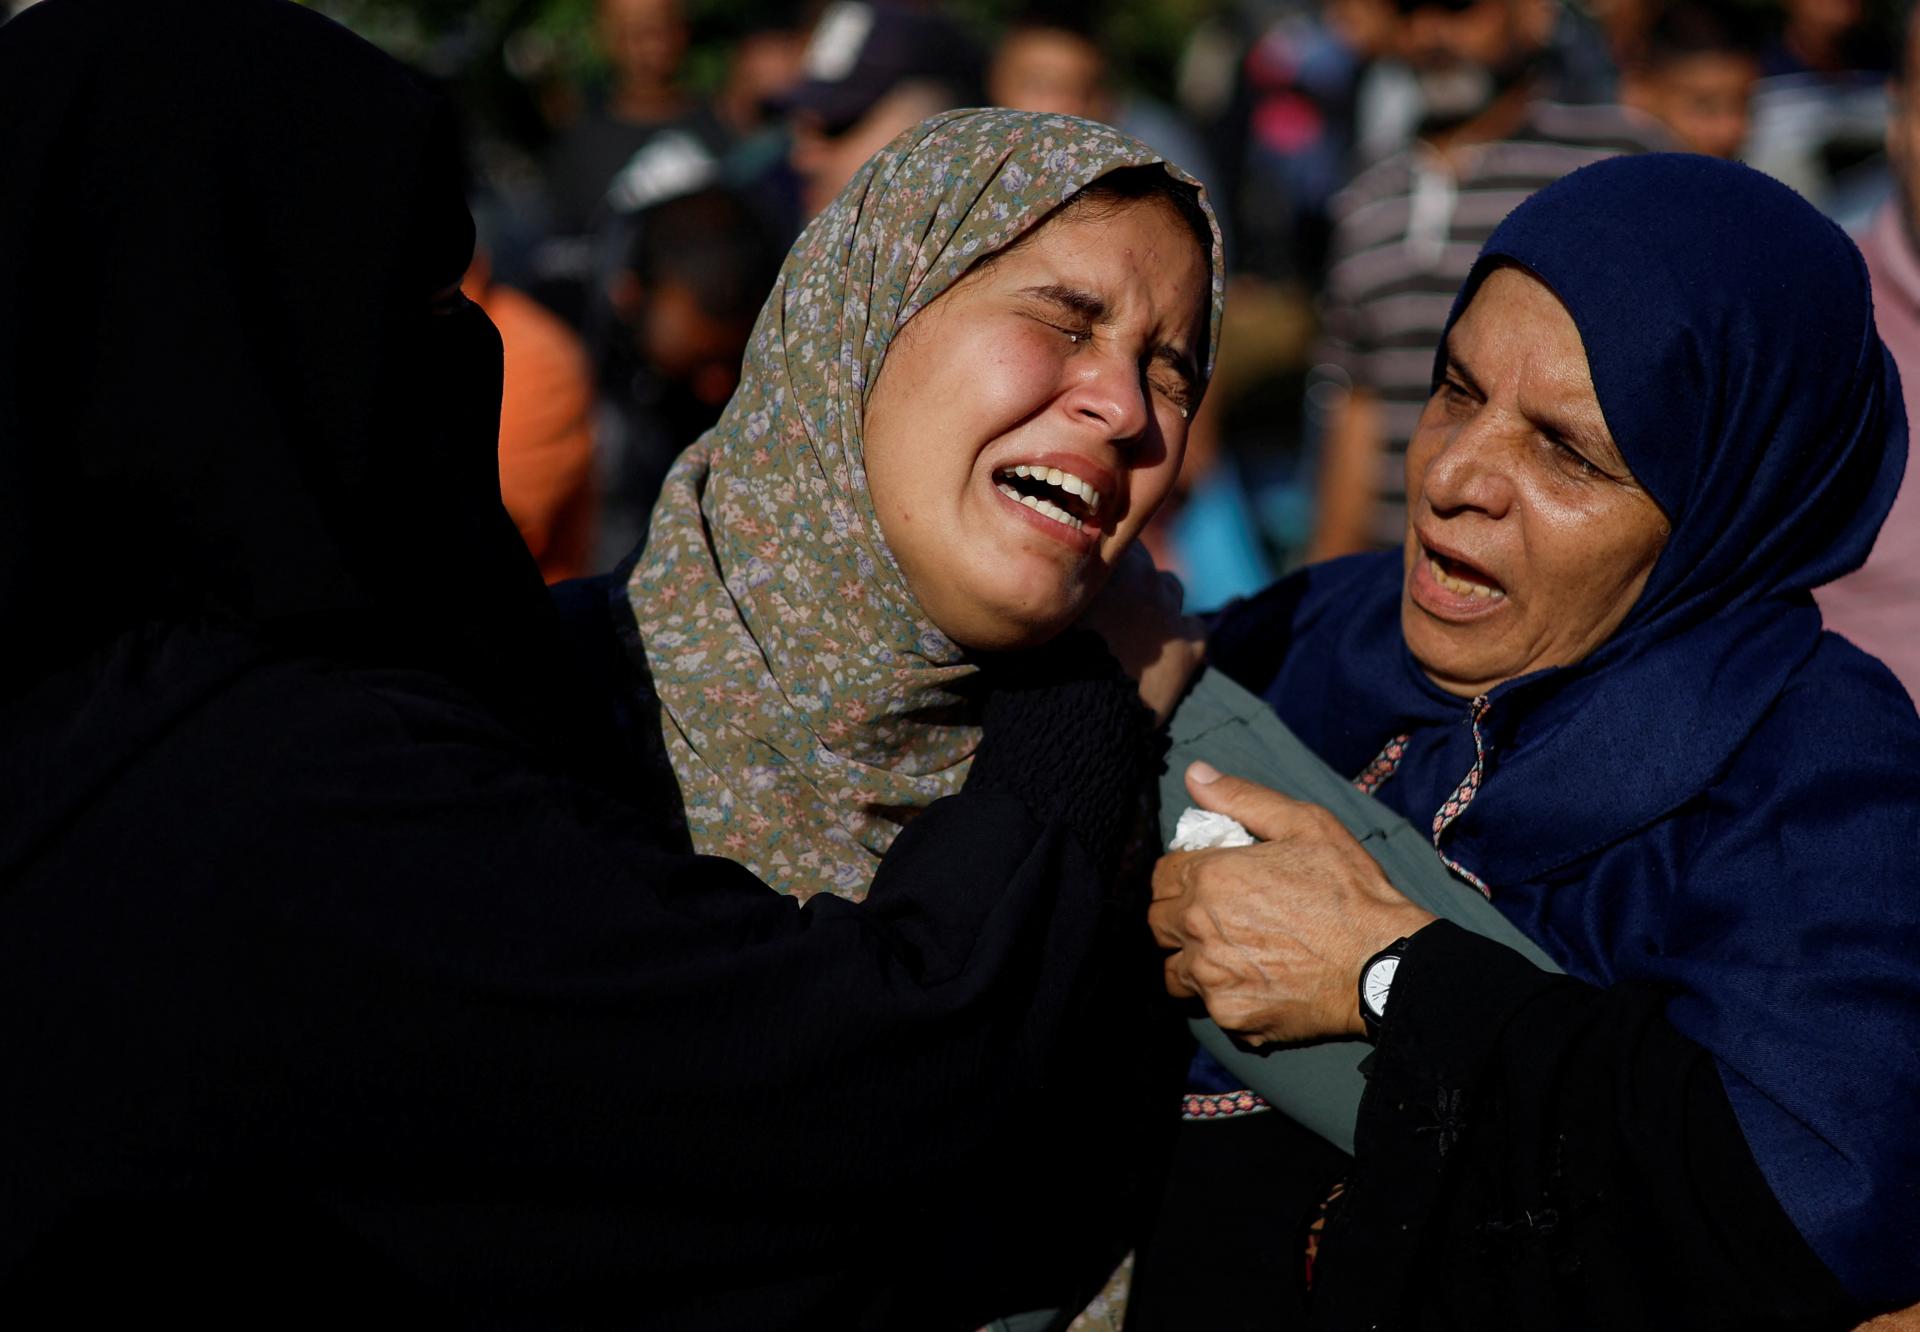 Hamas zverejnil menný zoznam vyše 7000 palestínskych obetí, USA mu nedôverujú